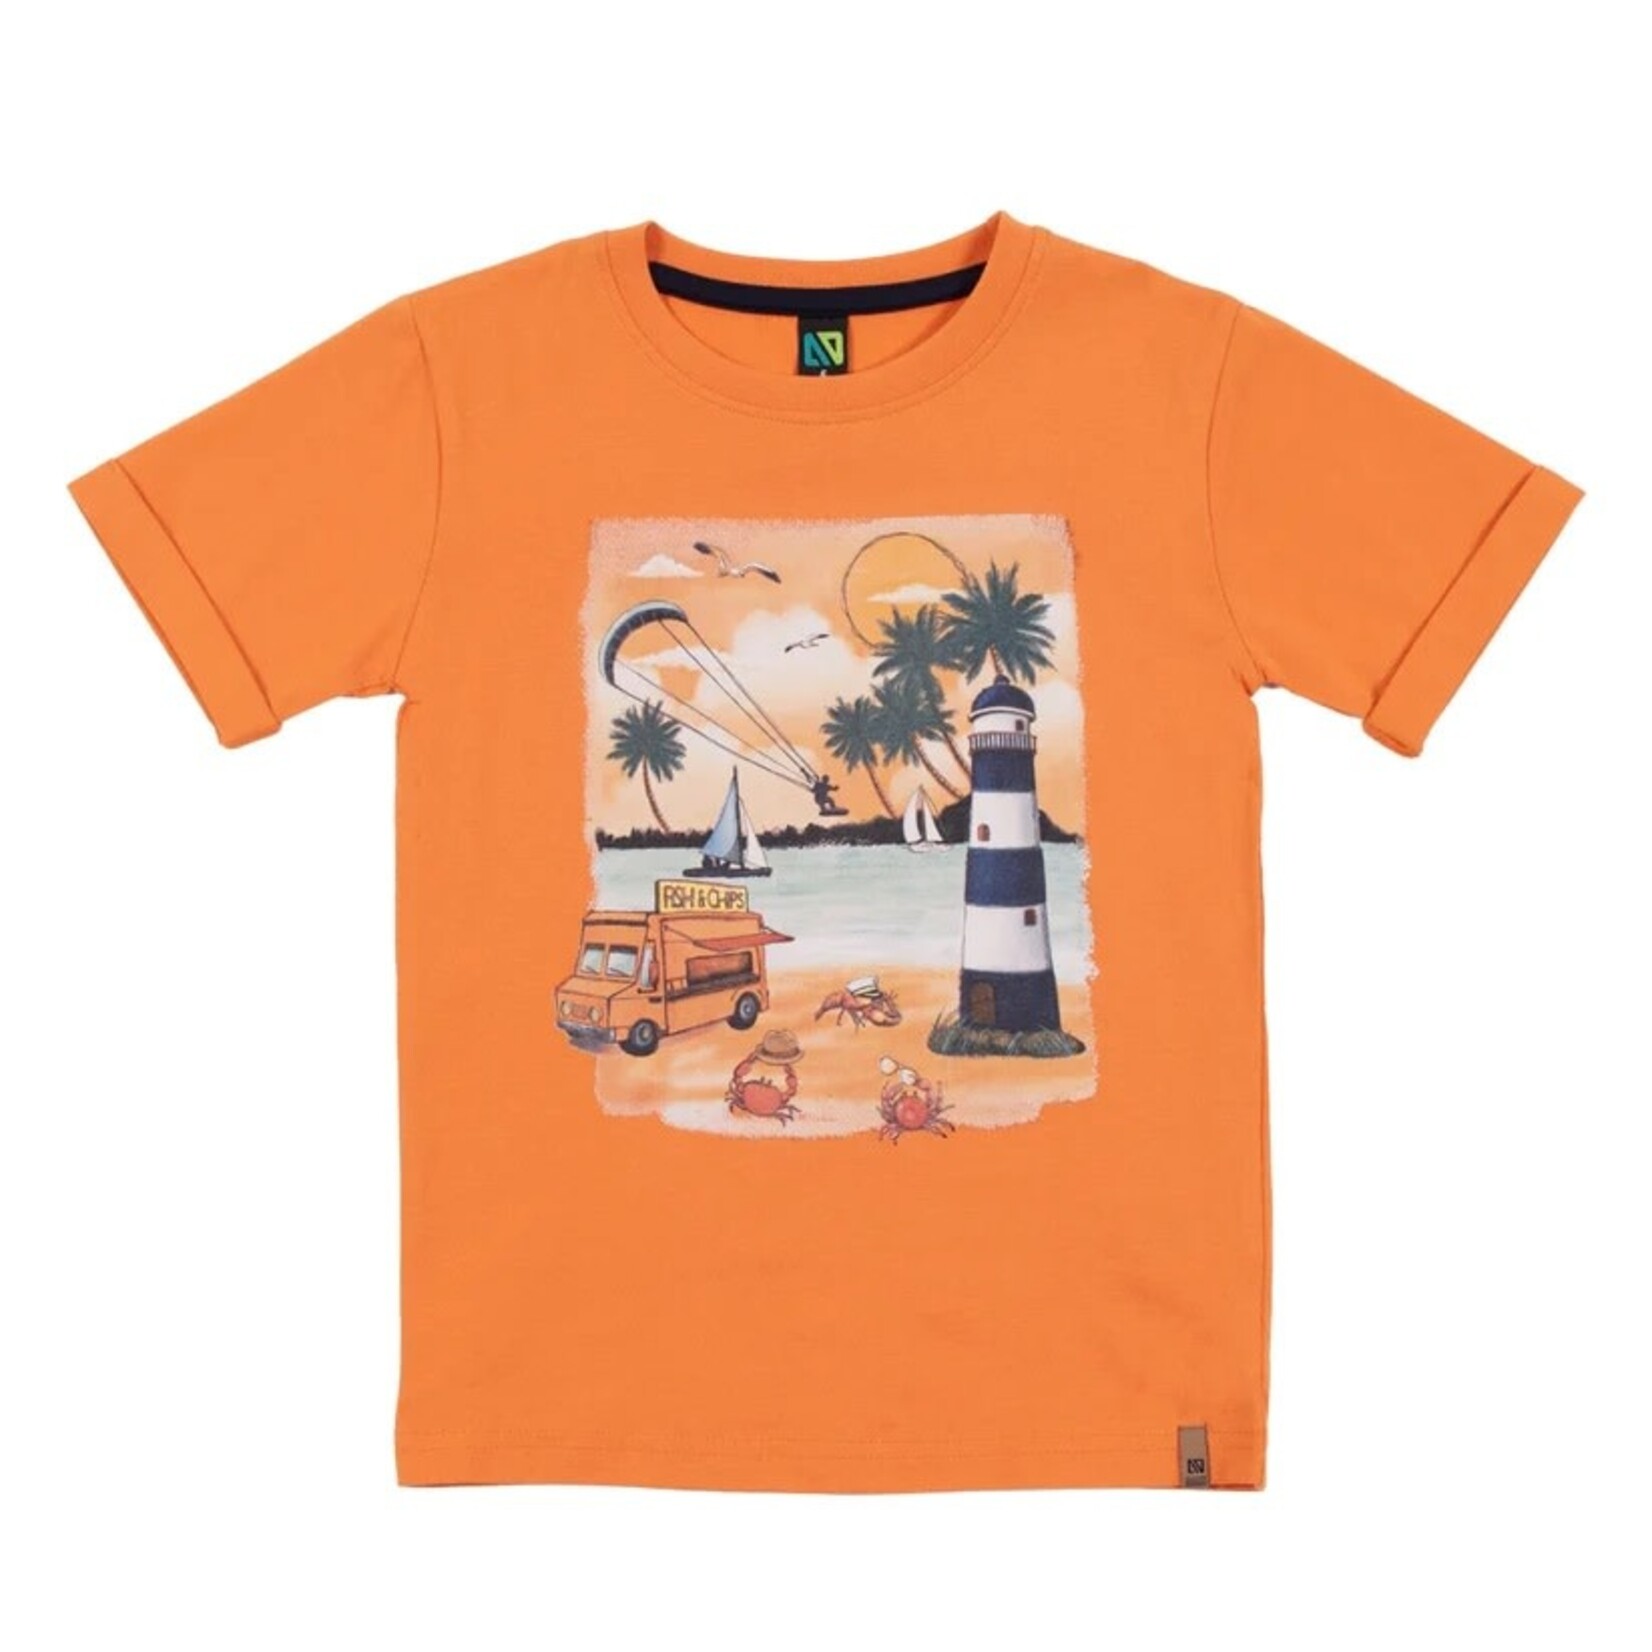 Nanö NANÖ - T-shirt à manches courtes orange avec imprimé de crabes à la plage - 'Cap sur la méditerranée'